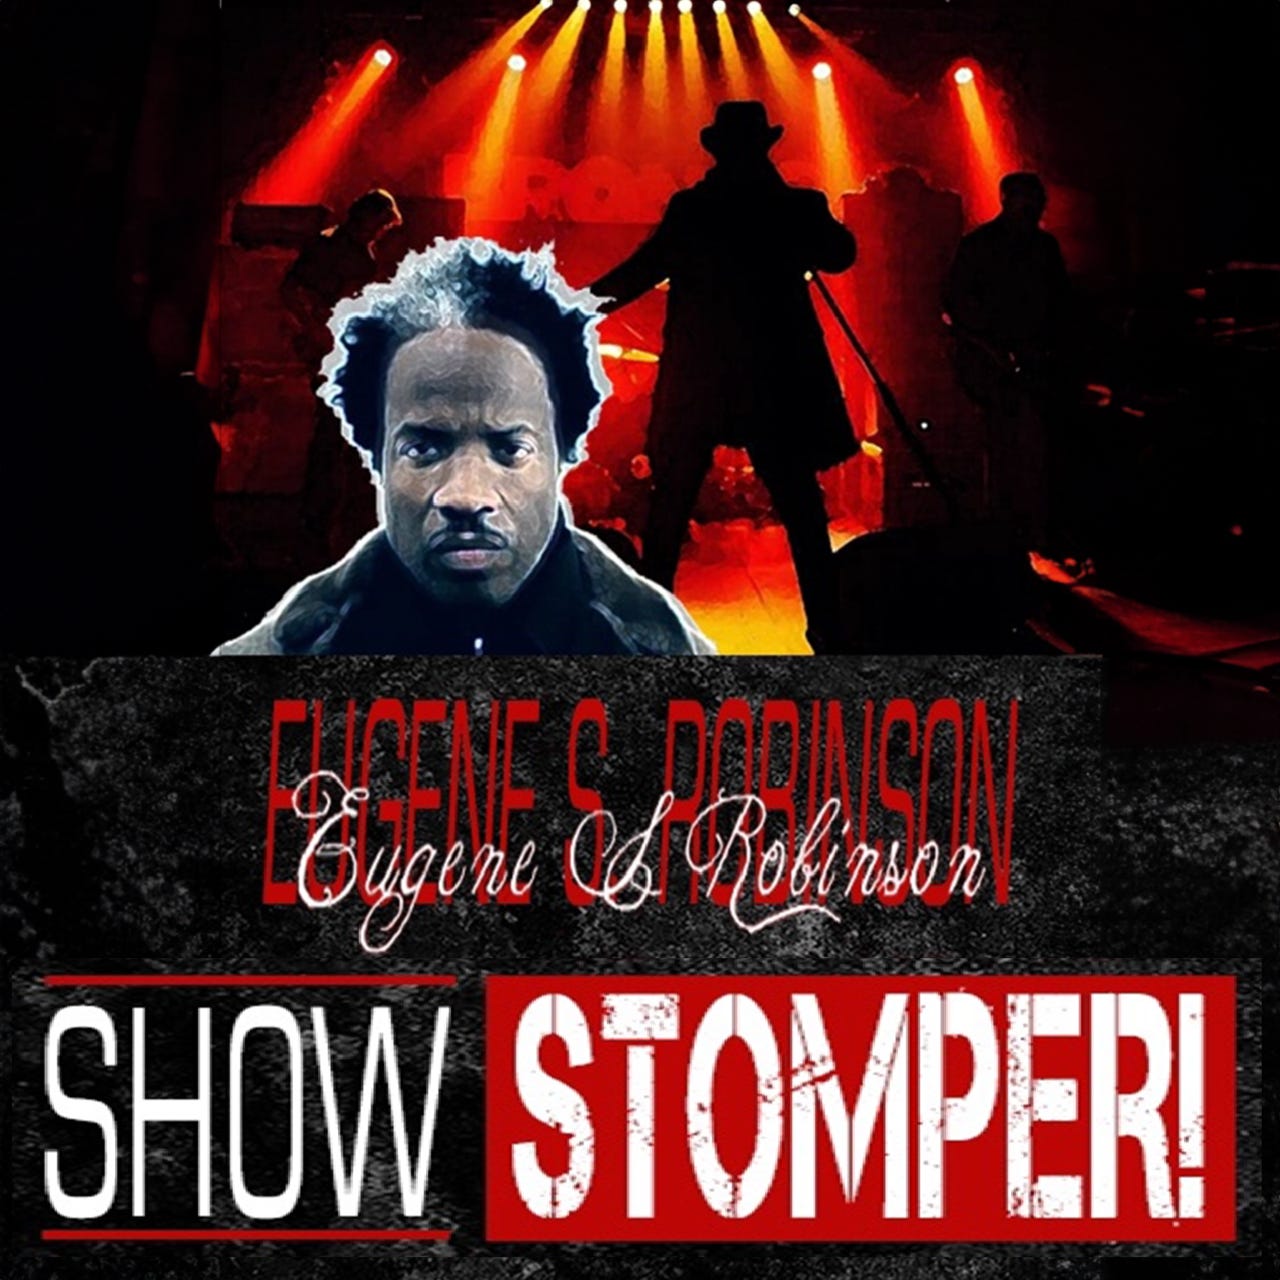 Artwork for The Eugene S. Robinson Show Stomper! Podcast